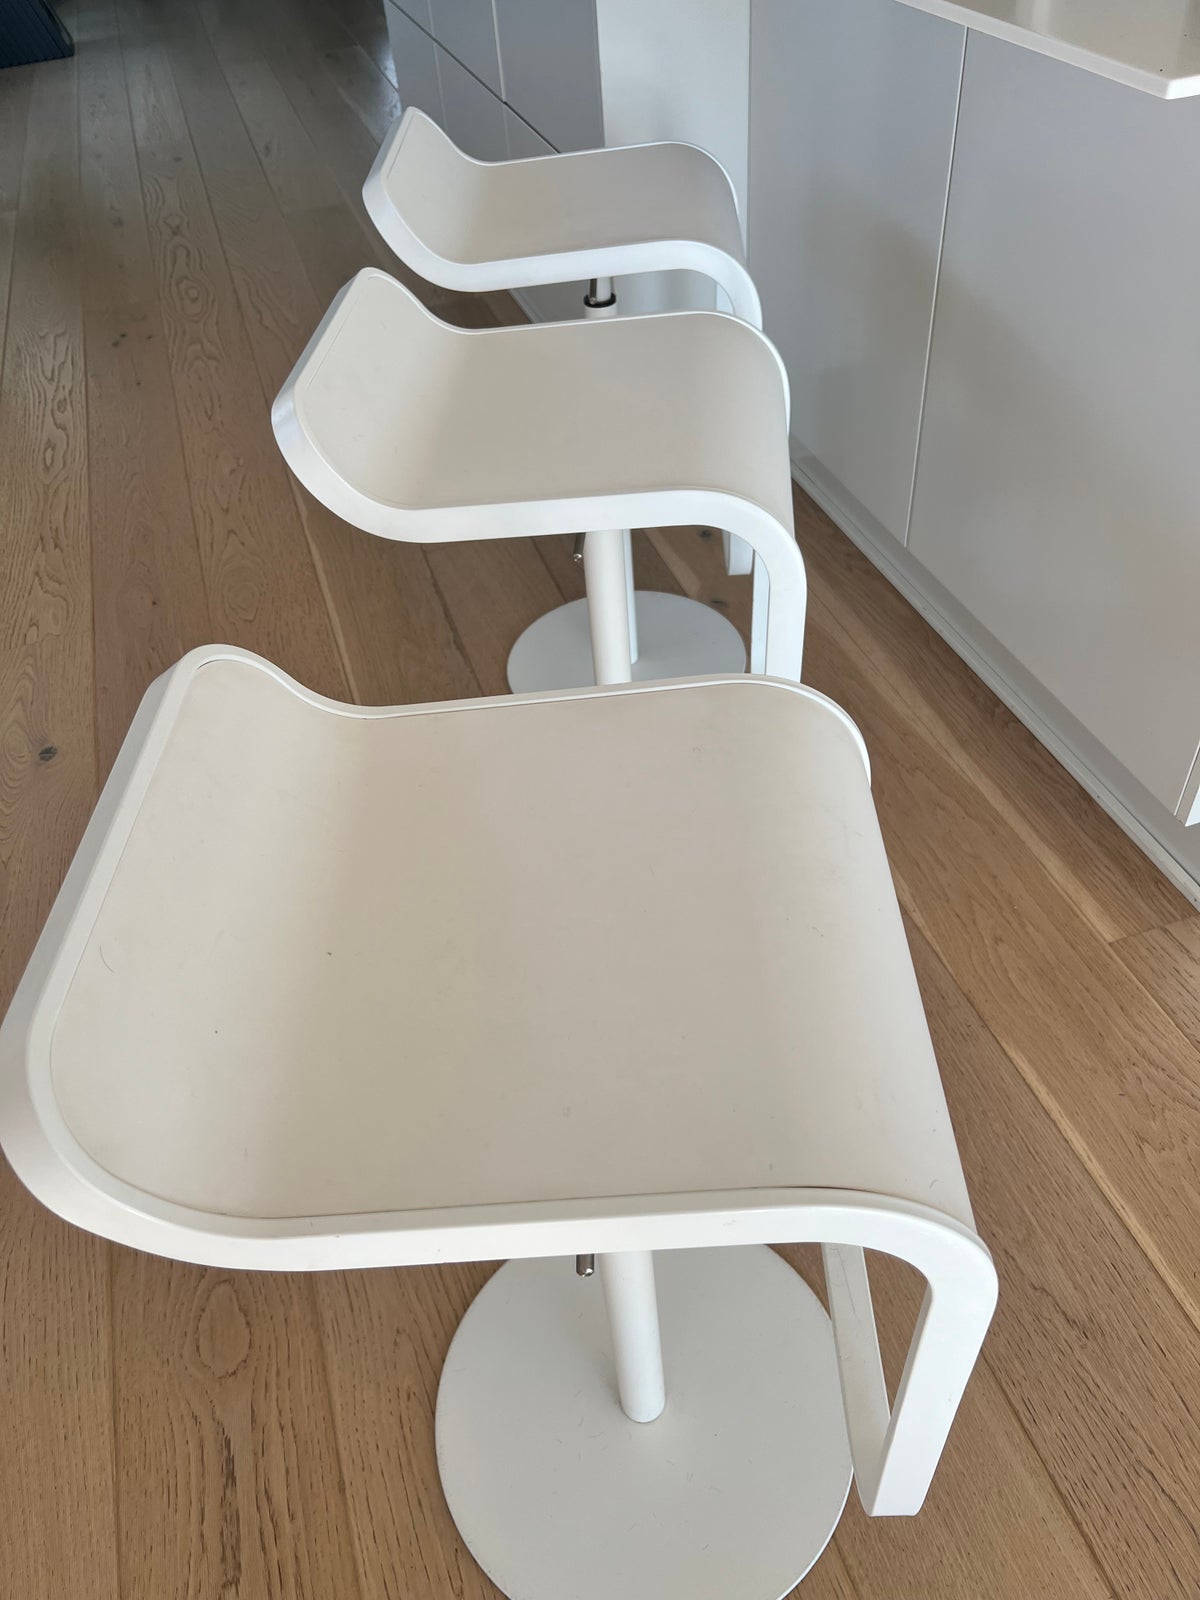 Anden arkitekt, Lapalma barstole, Hvid barstol x 3